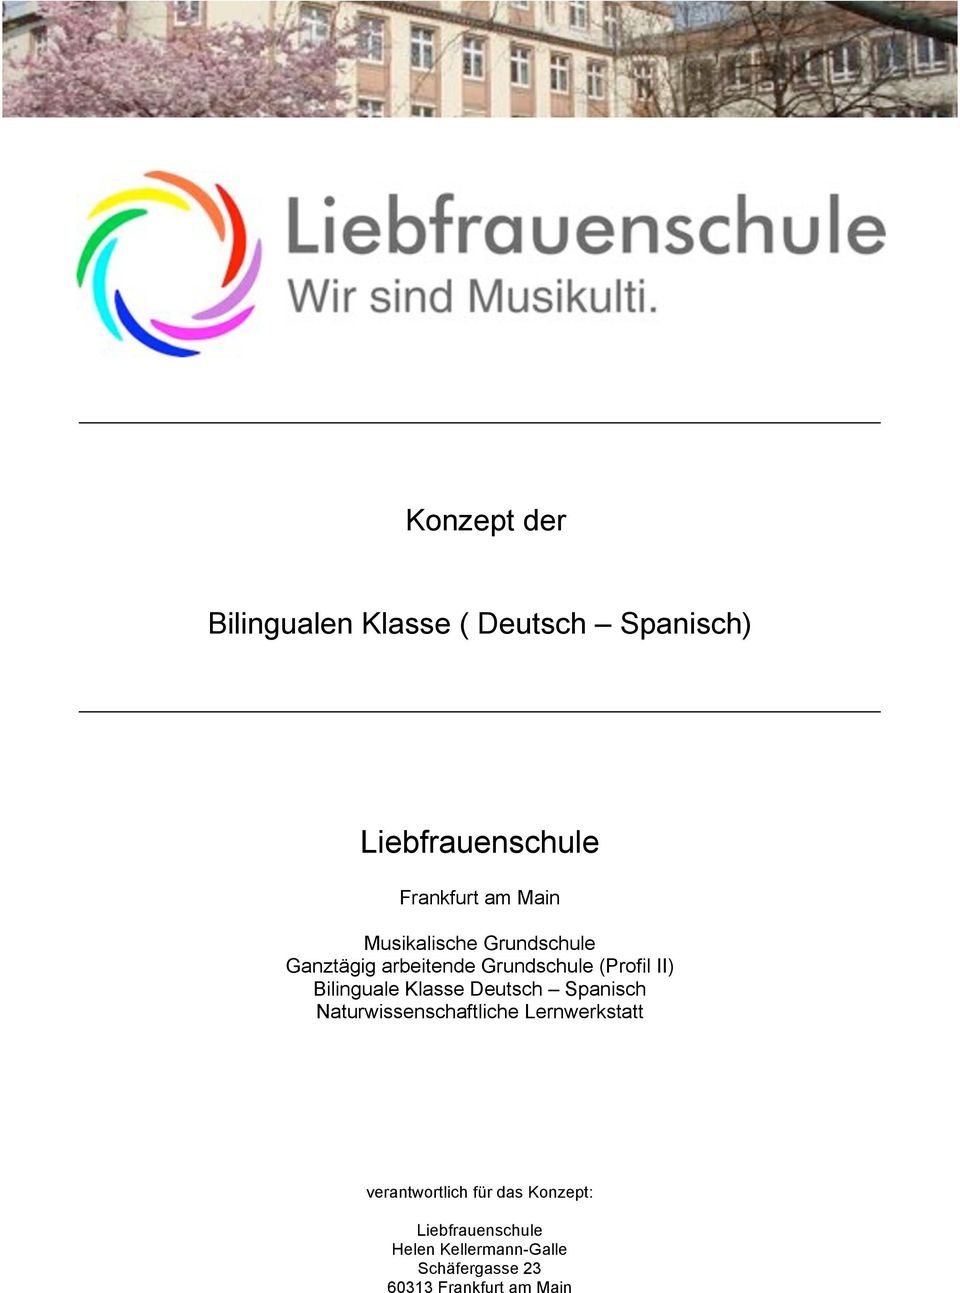 Bilinguale Klasse Deutsch Spanisch Naturwissenschaftliche Lernwerkstatt